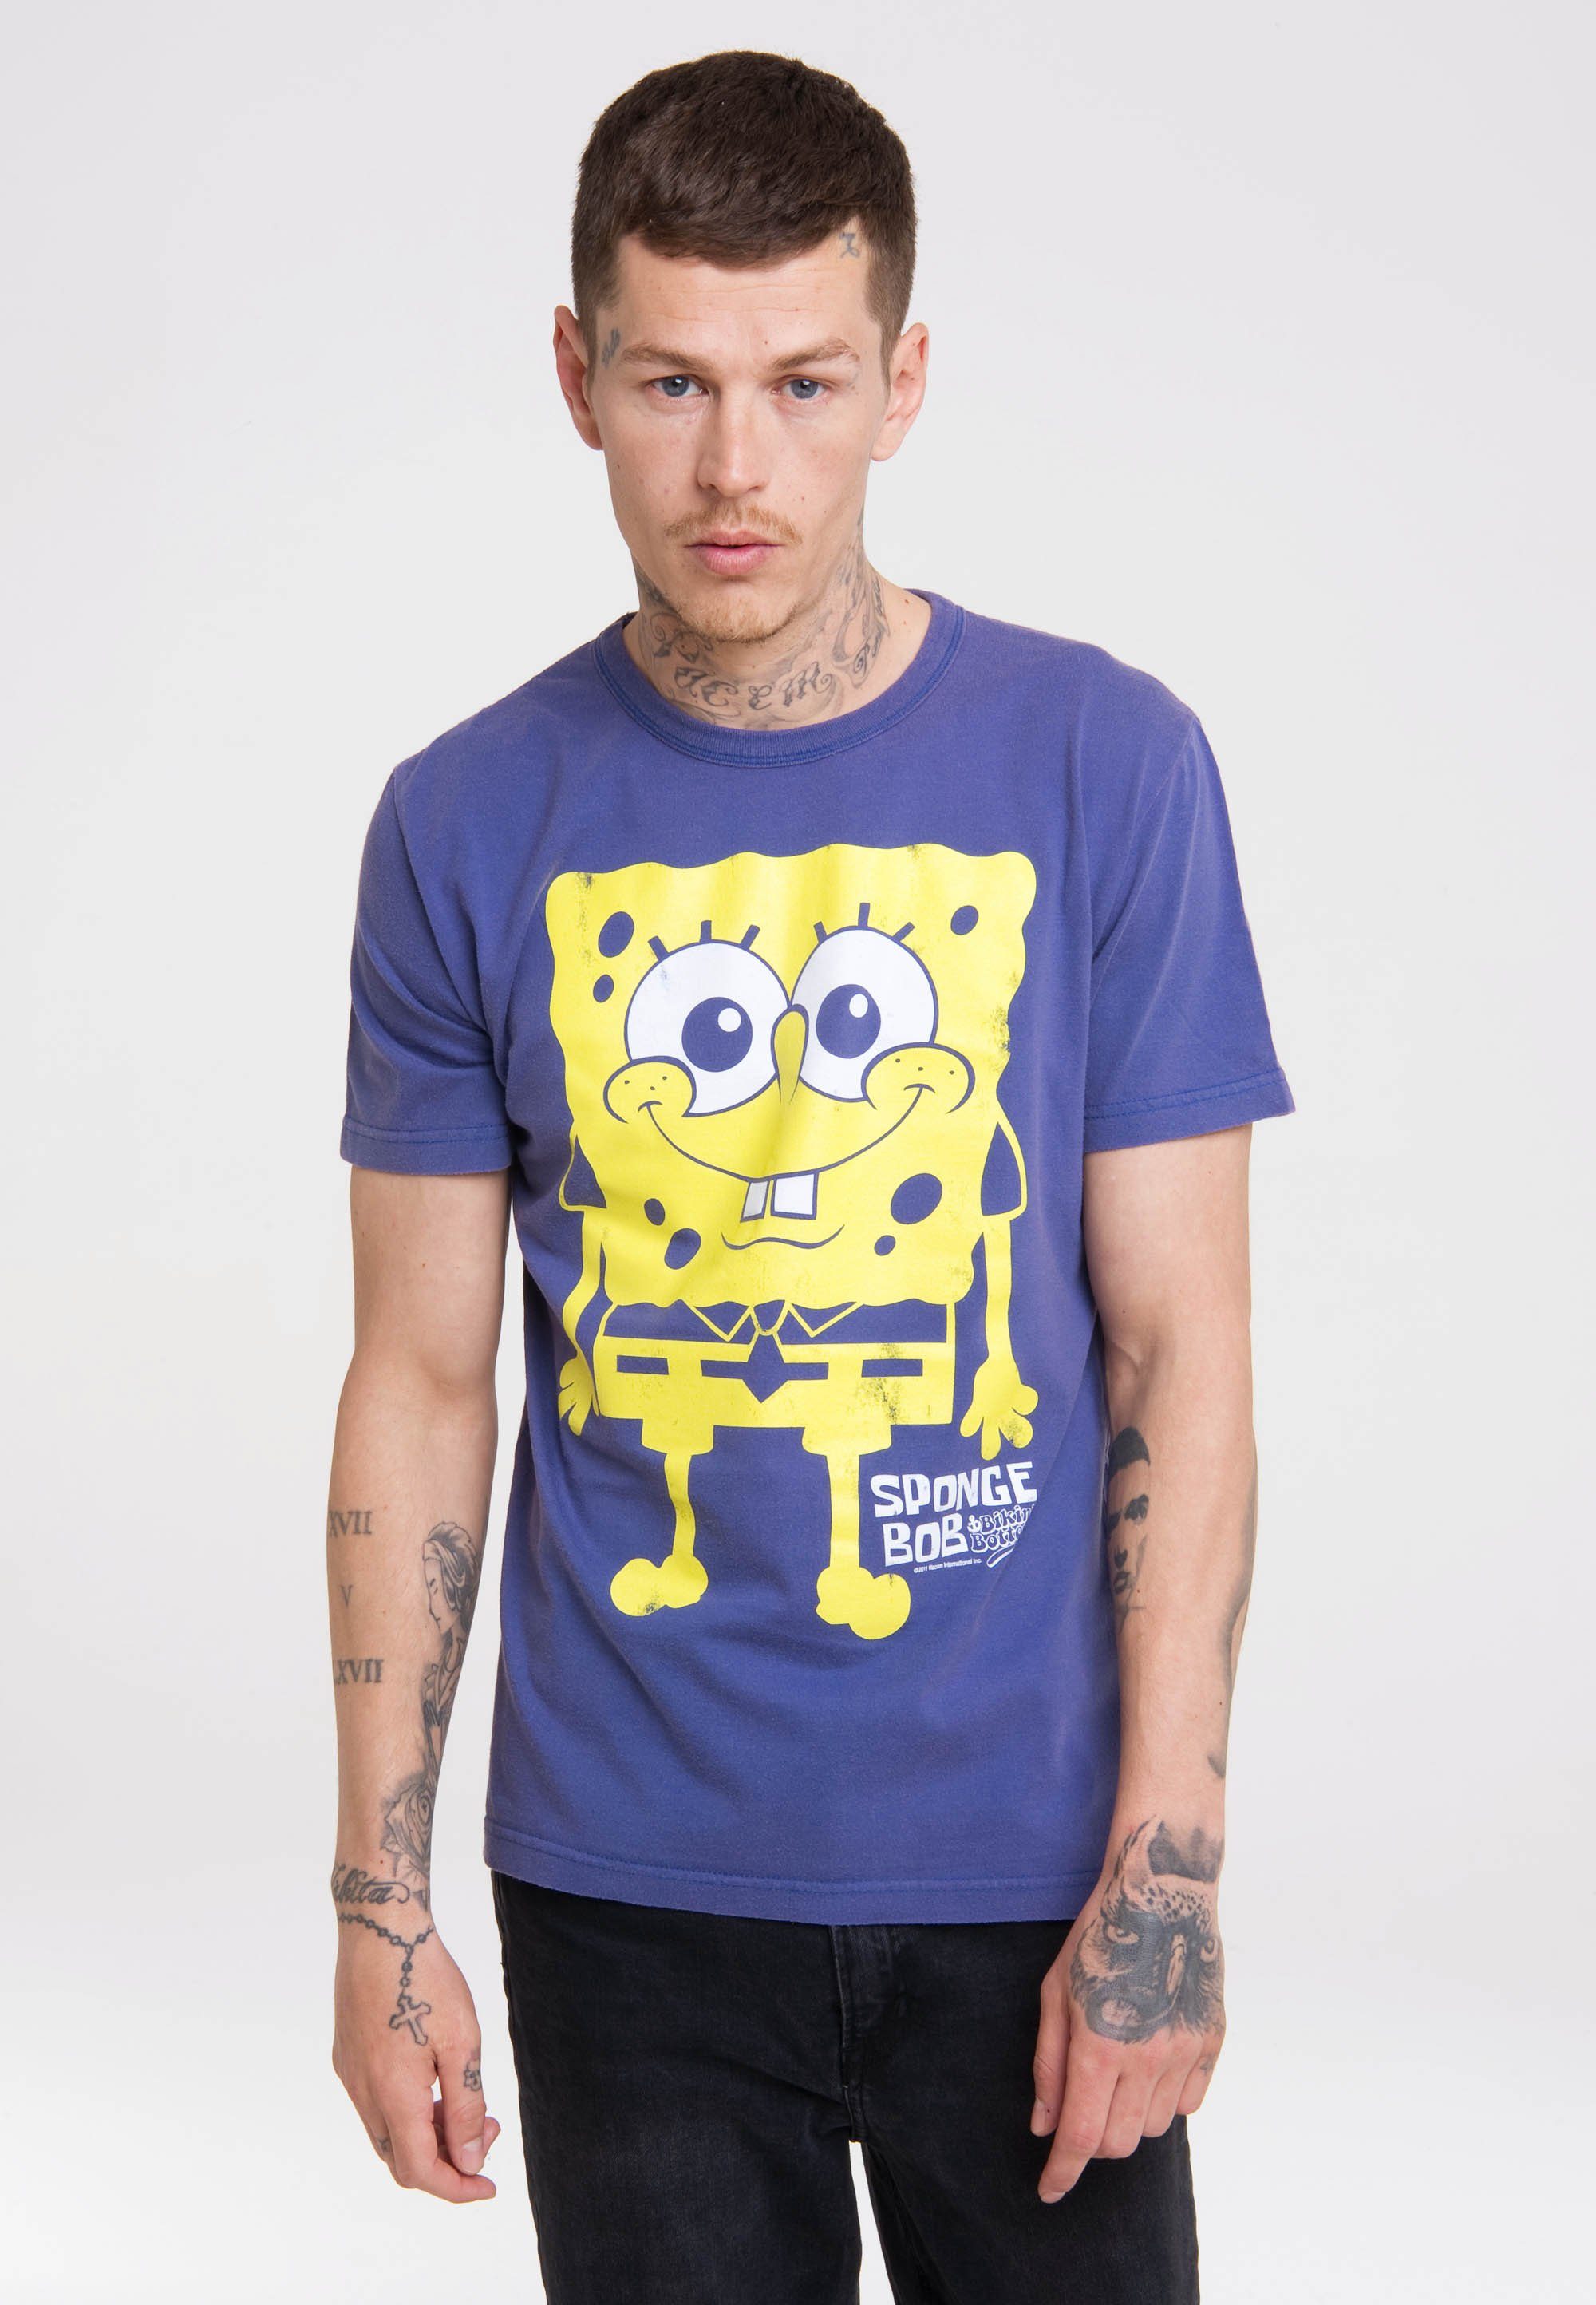 LOGOSHIRT T-Shirt Besonders Schwammkopf bequem Rundhalsausschnitt durch Print, mit lizenziertem klassischen Spongebob